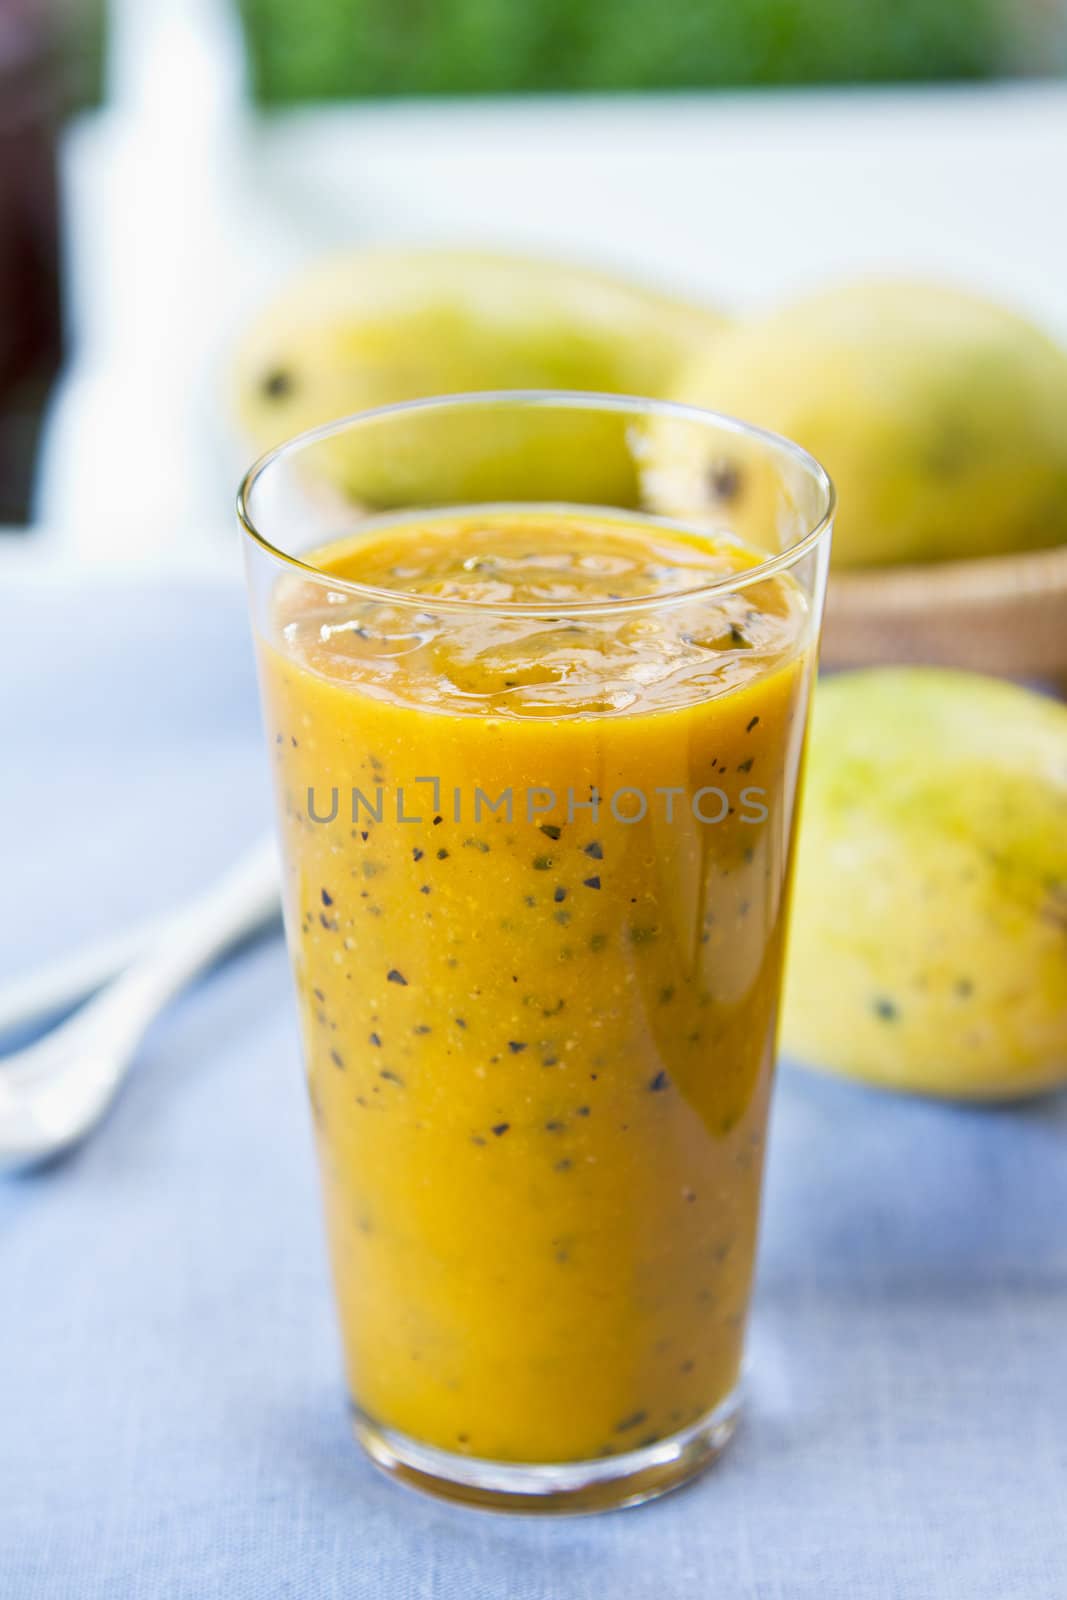 Fresh Mango with Passion fruit smoothie by fresh Mango